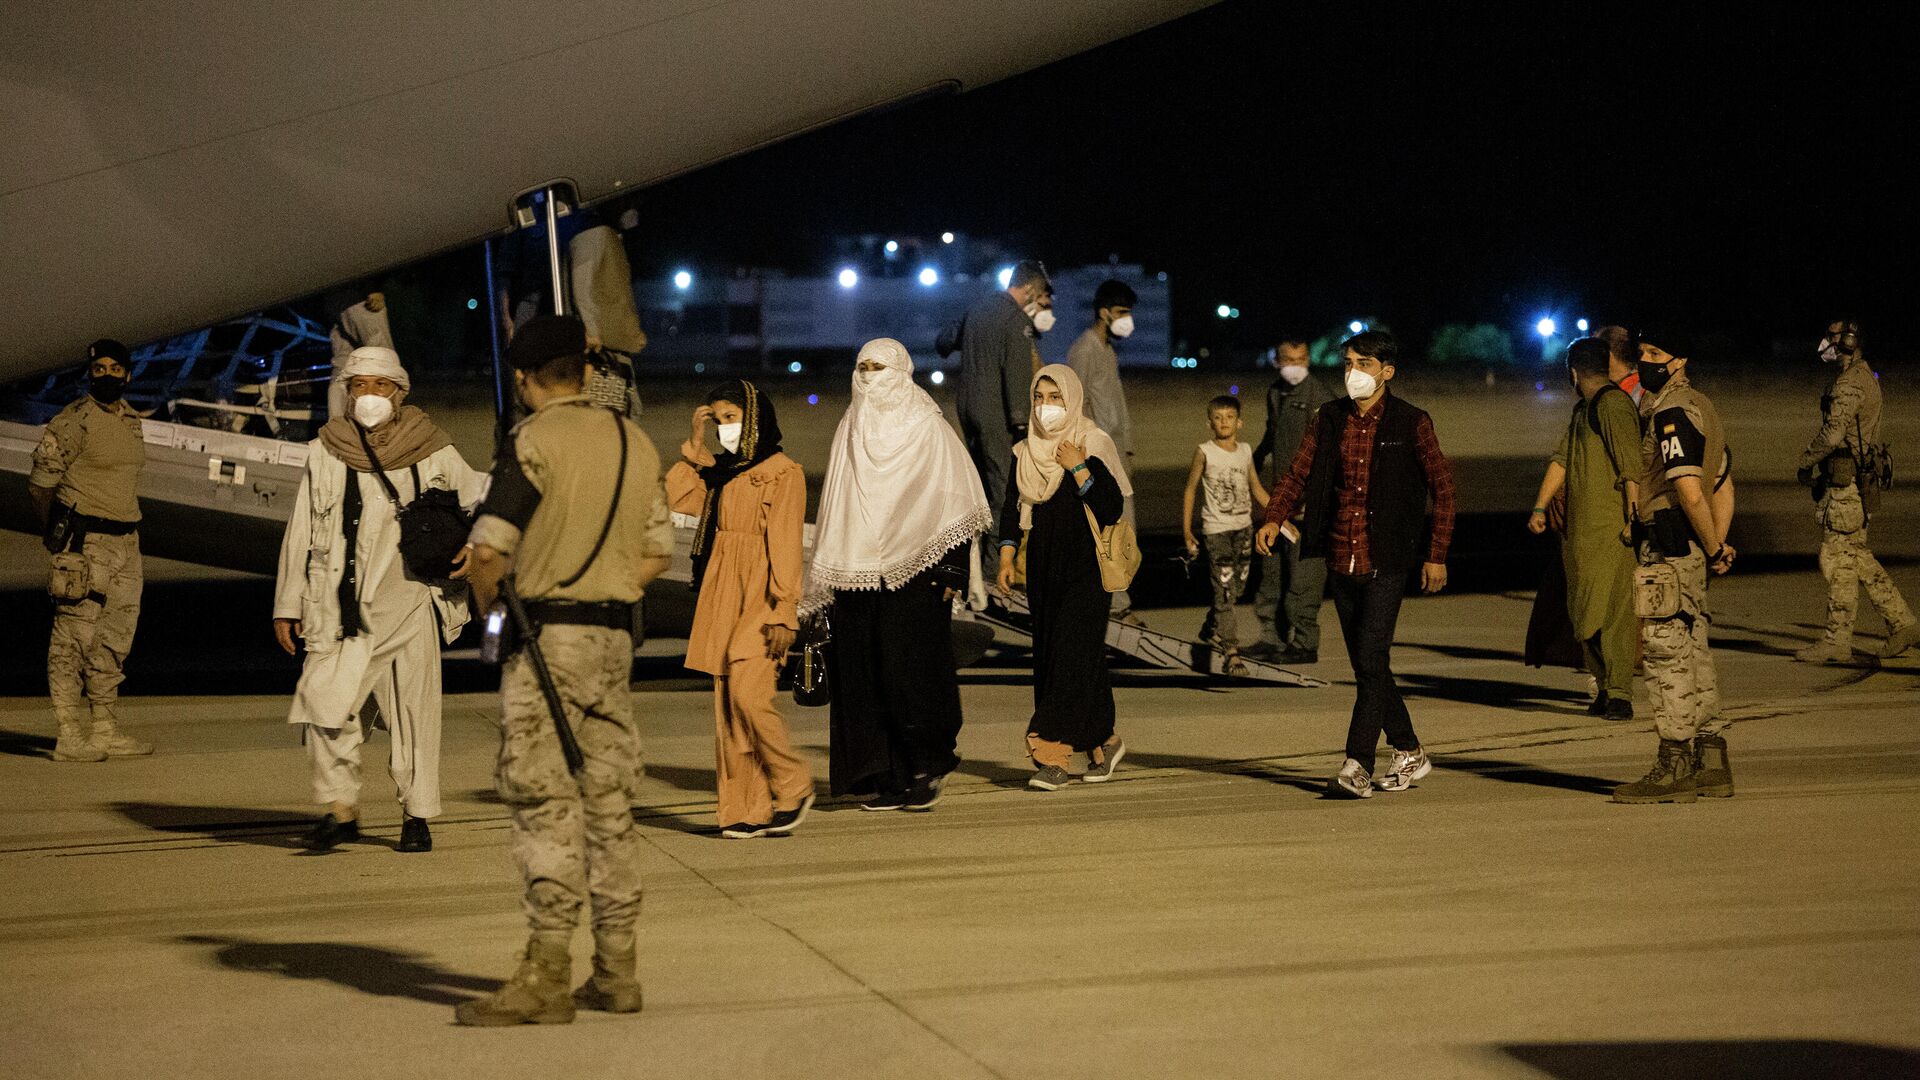 Varias personas repatriadas llegan a la pista tras bajarse del avión A400M en el que ha sido evacuados de Kabul, a 19 de agosto de 2021, en Torrejón de Ardoz, Madrid - Sputnik Mundo, 1920, 23.08.2021